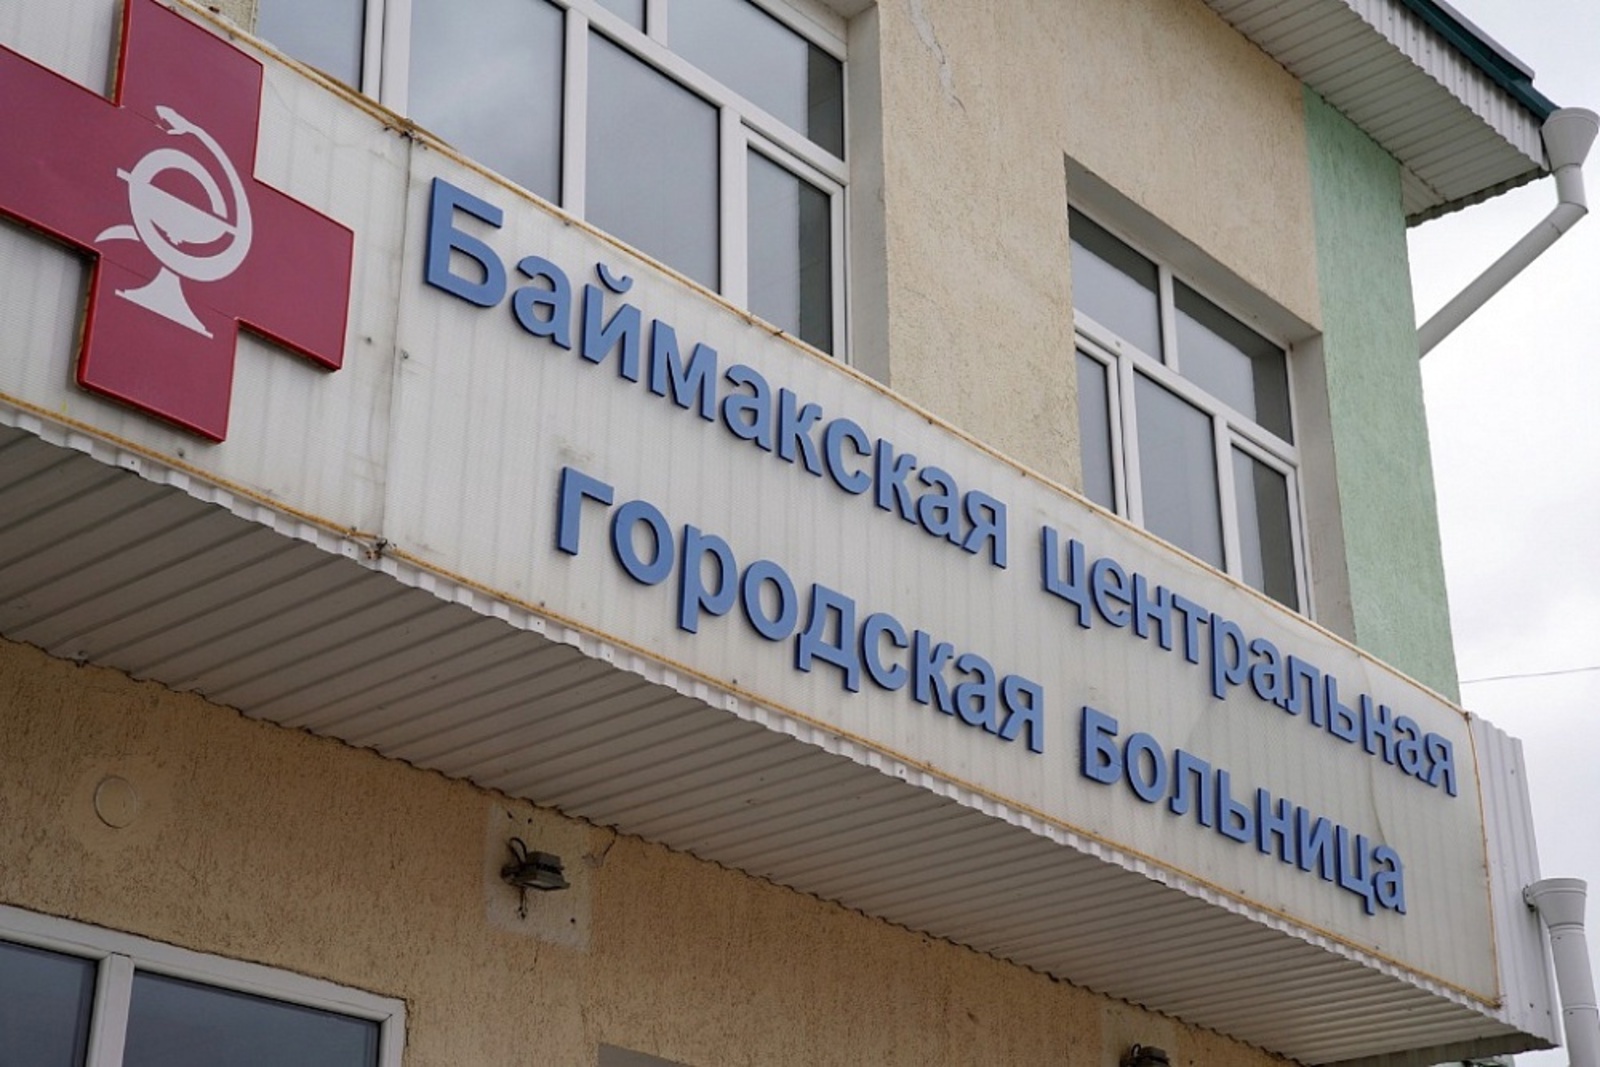 Жители Башкирии могут записаться на прием к врачу даже в выходные